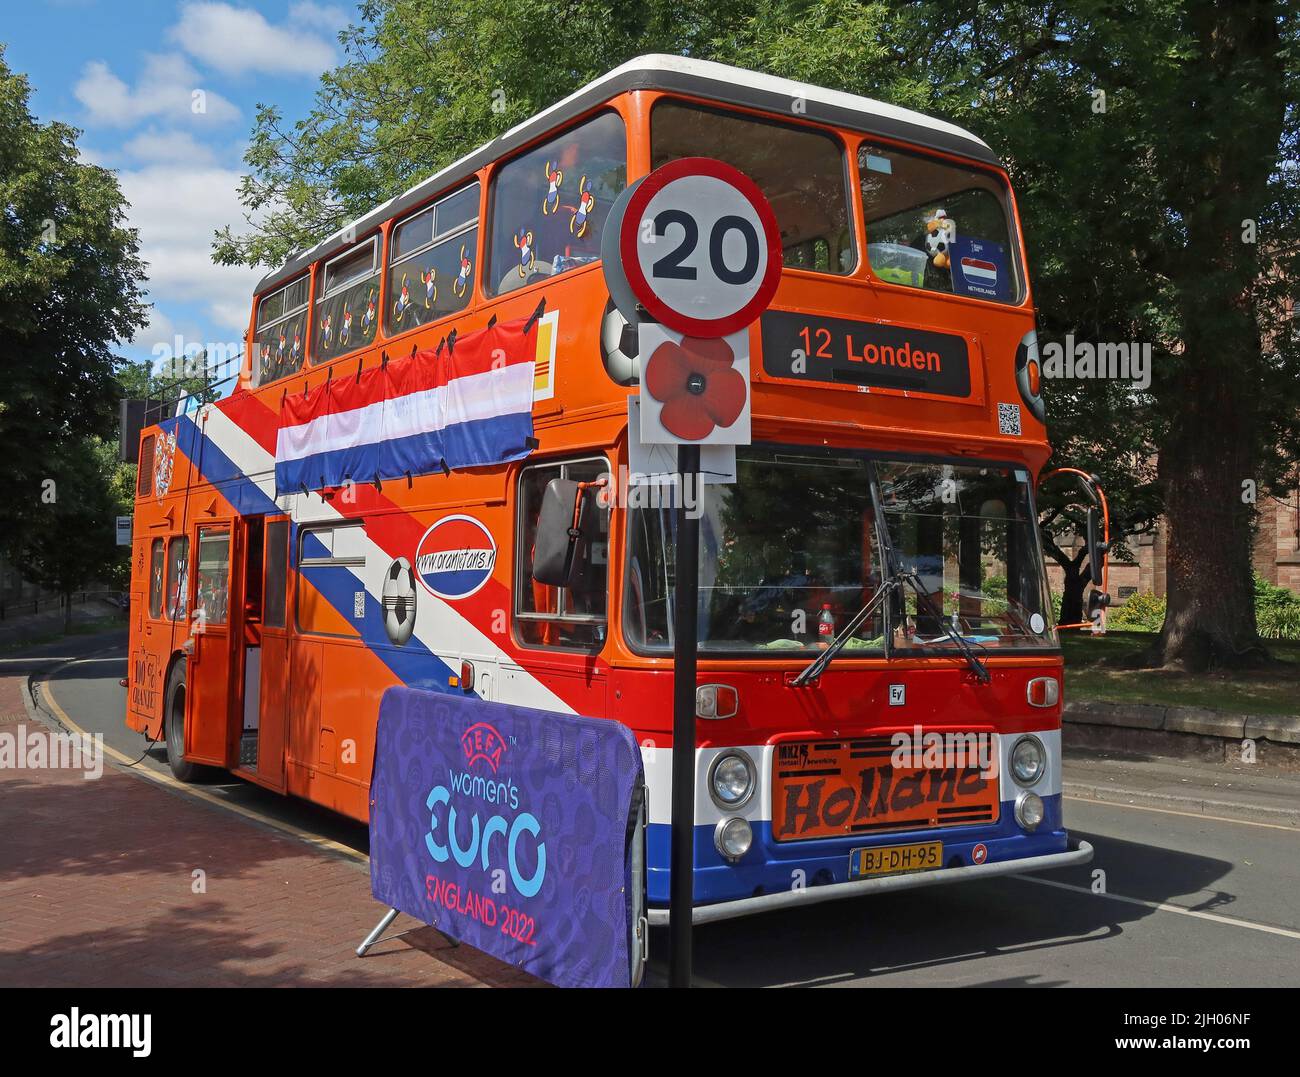 OranjeFans Holland Orange Damen Fußballtour Bus in Leigh, in der Nähe von Wigan, 12 Ziel Londen, BJ-DH-95 Stockfoto